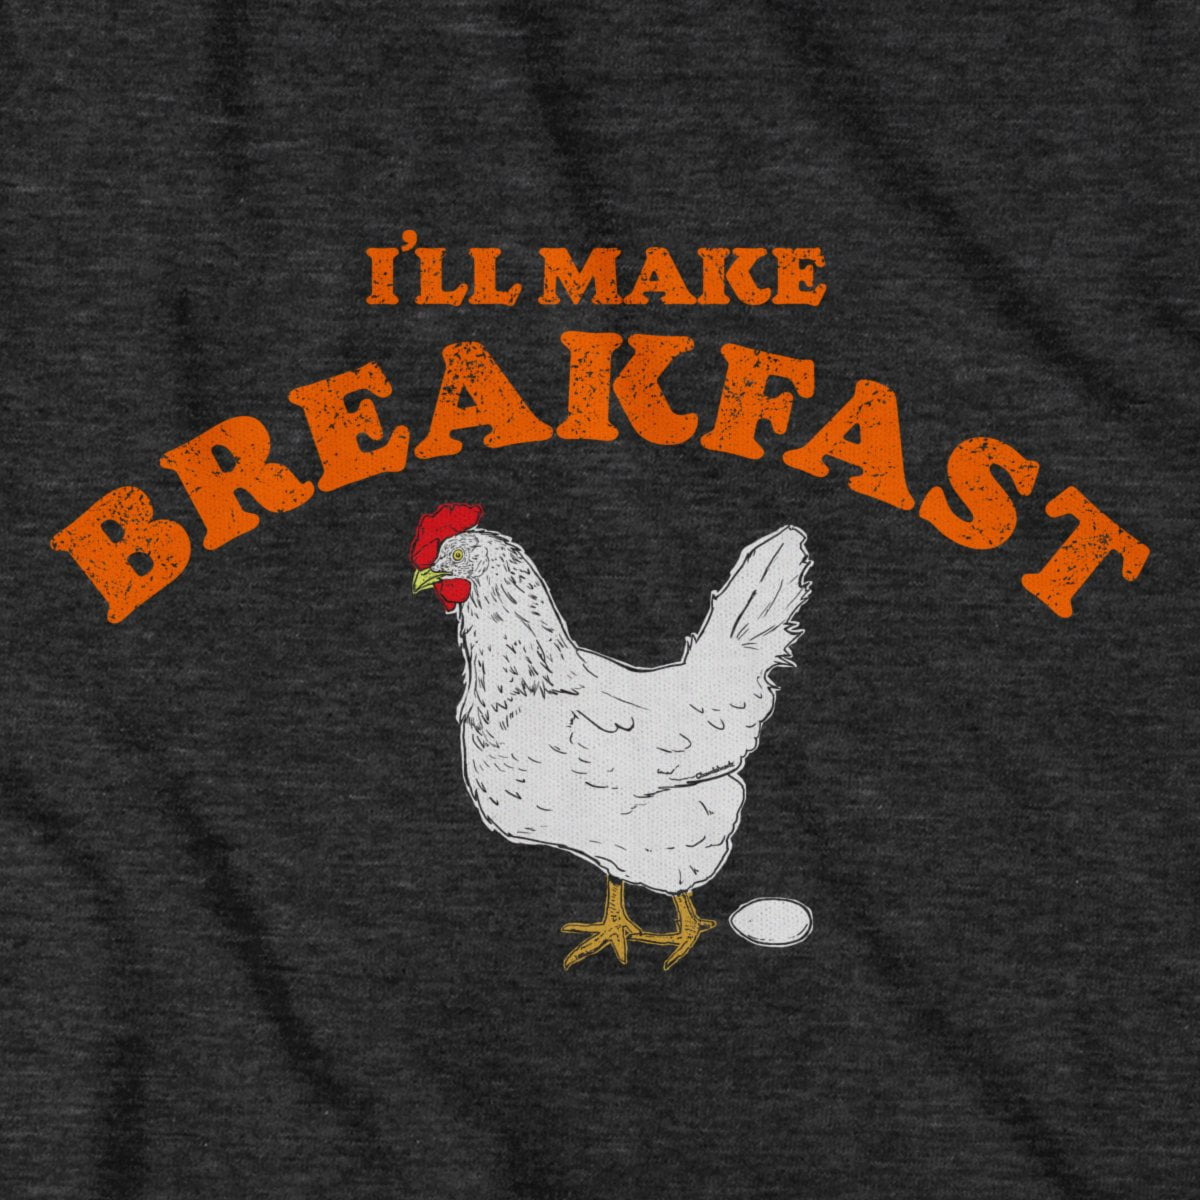 Making Breakfast T-Shirt - Chowdaheadz